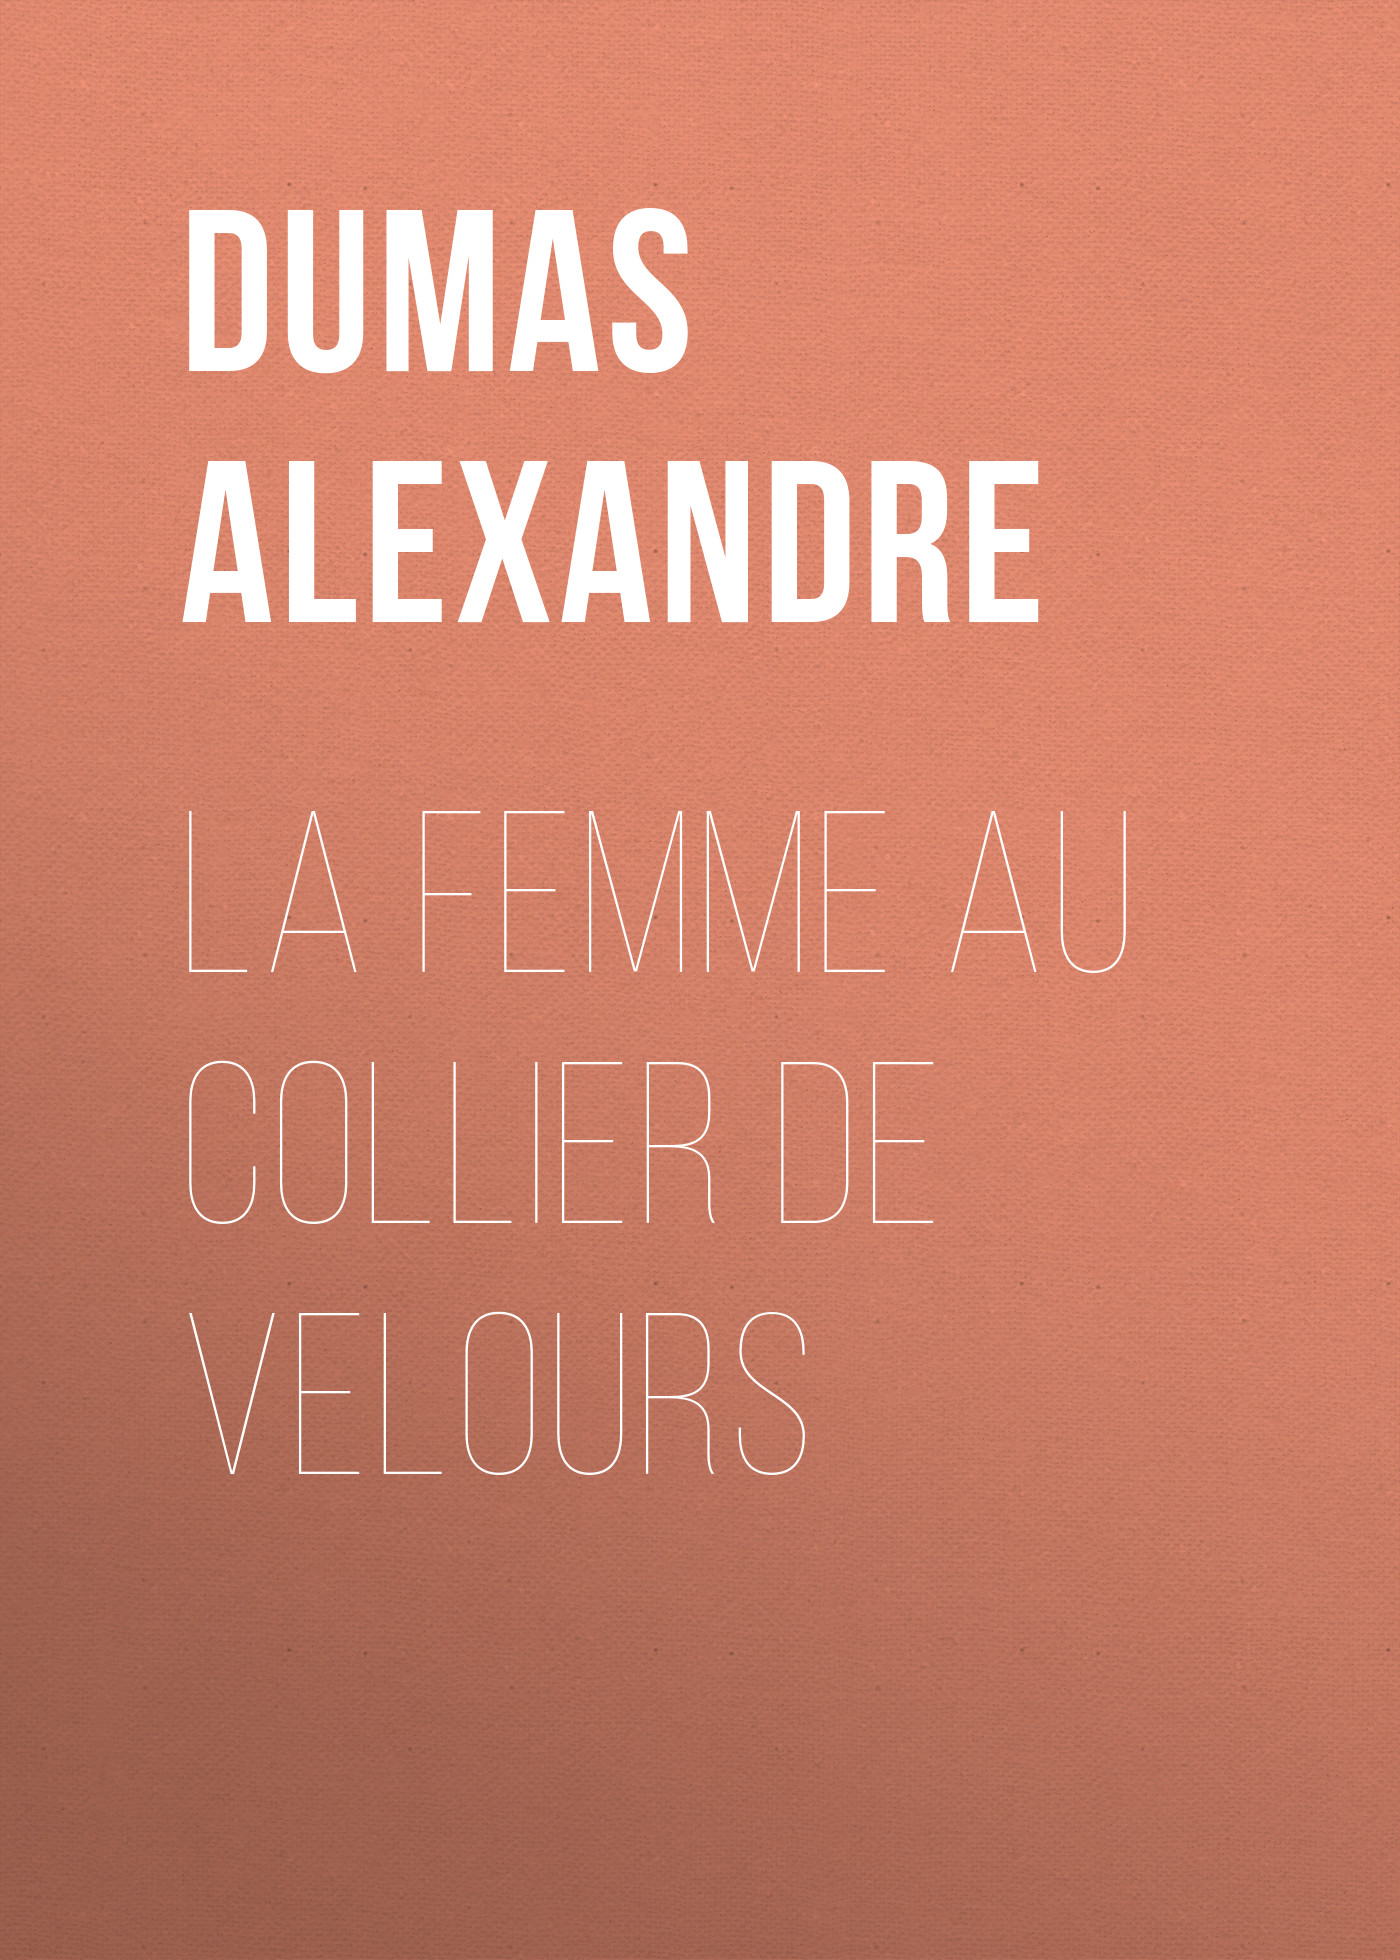 Книга La femme au collier de velours из серии , созданная Alexandre Dumas, может относится к жанру Литература 19 века, Зарубежная старинная литература, Зарубежная классика. Стоимость электронной книги La femme au collier de velours с идентификатором 25201519 составляет 0 руб.